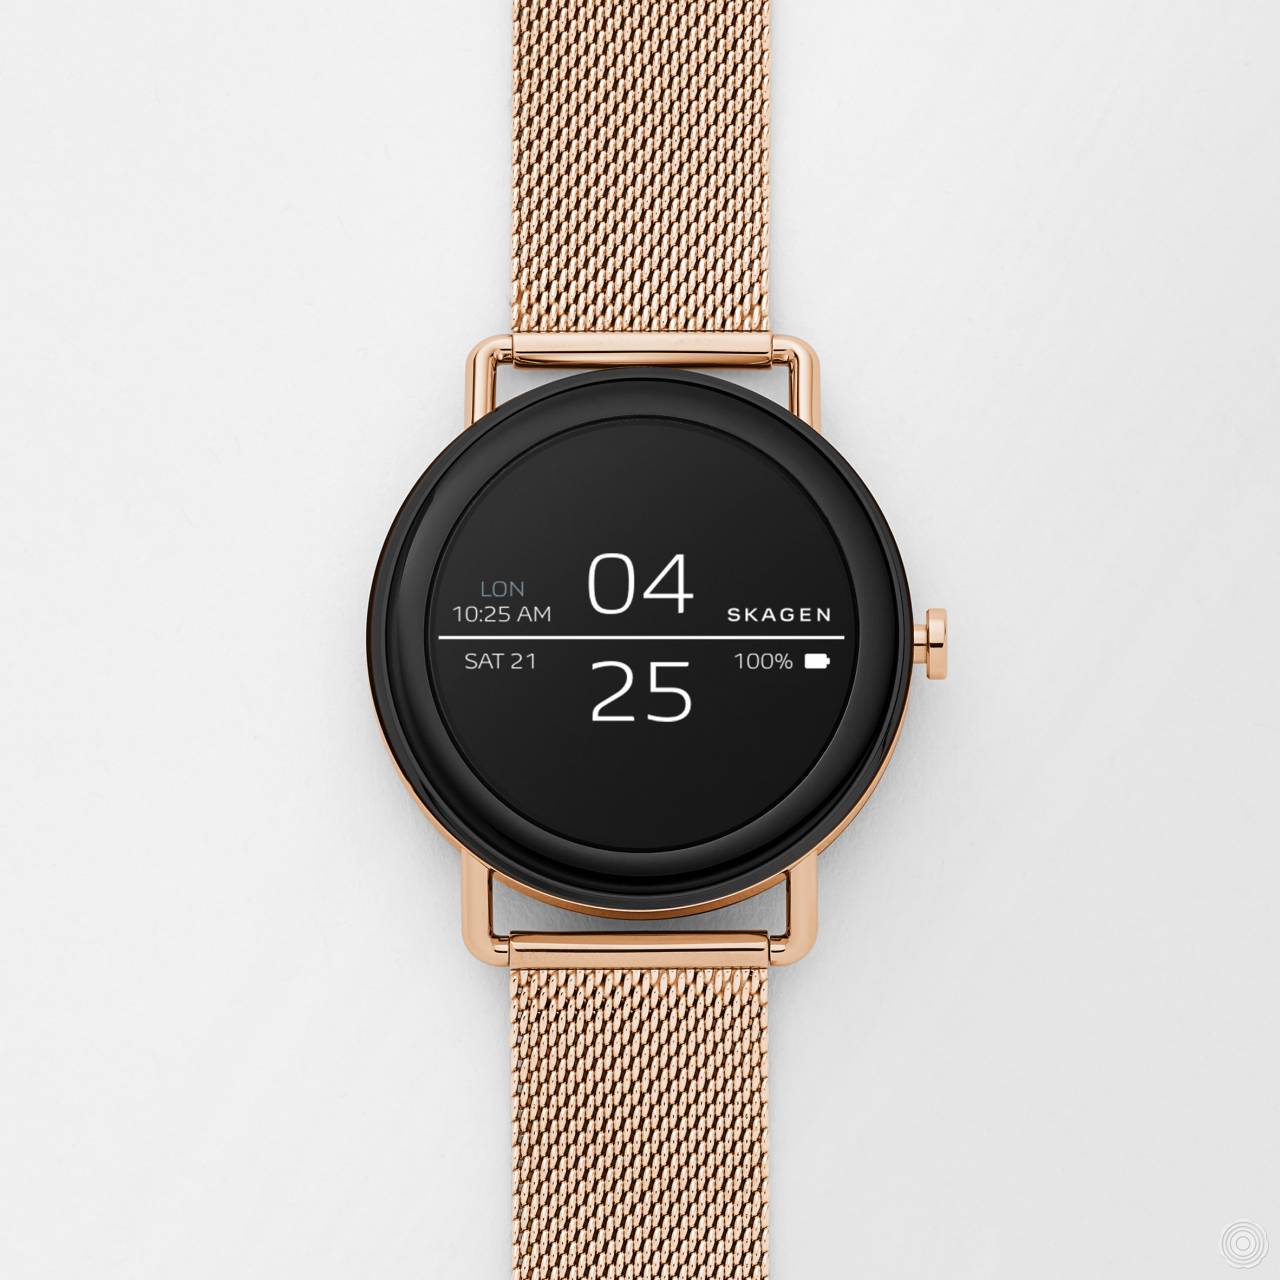 Skagen's minimal smartwatch